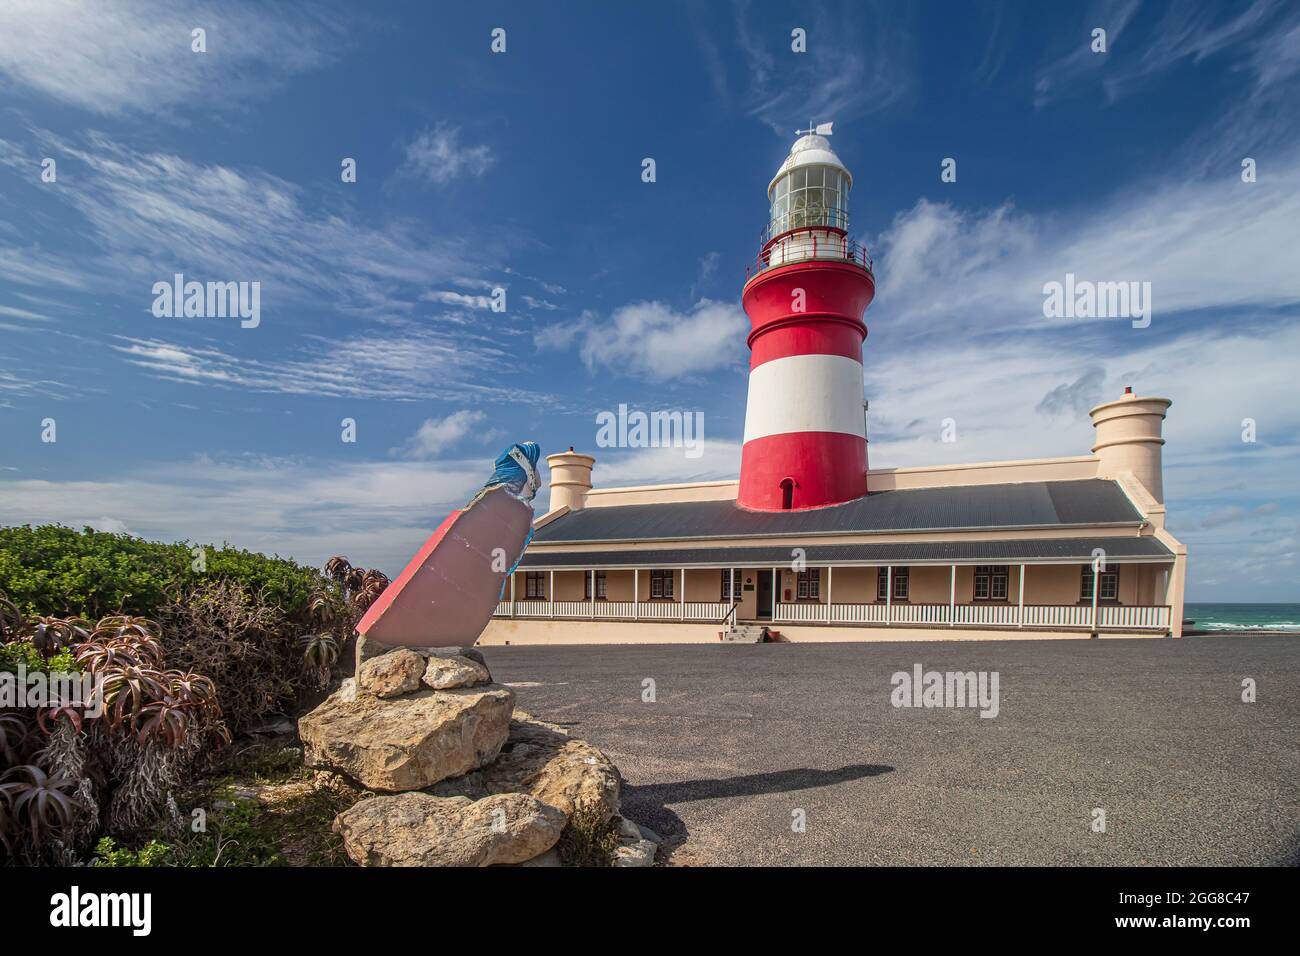 Faro di Cape Agulhas, il secondo faro ancora più antico in funzione in Sudafrica, che si trova anche al punto più meridionale dell'Africa. Foto Stock